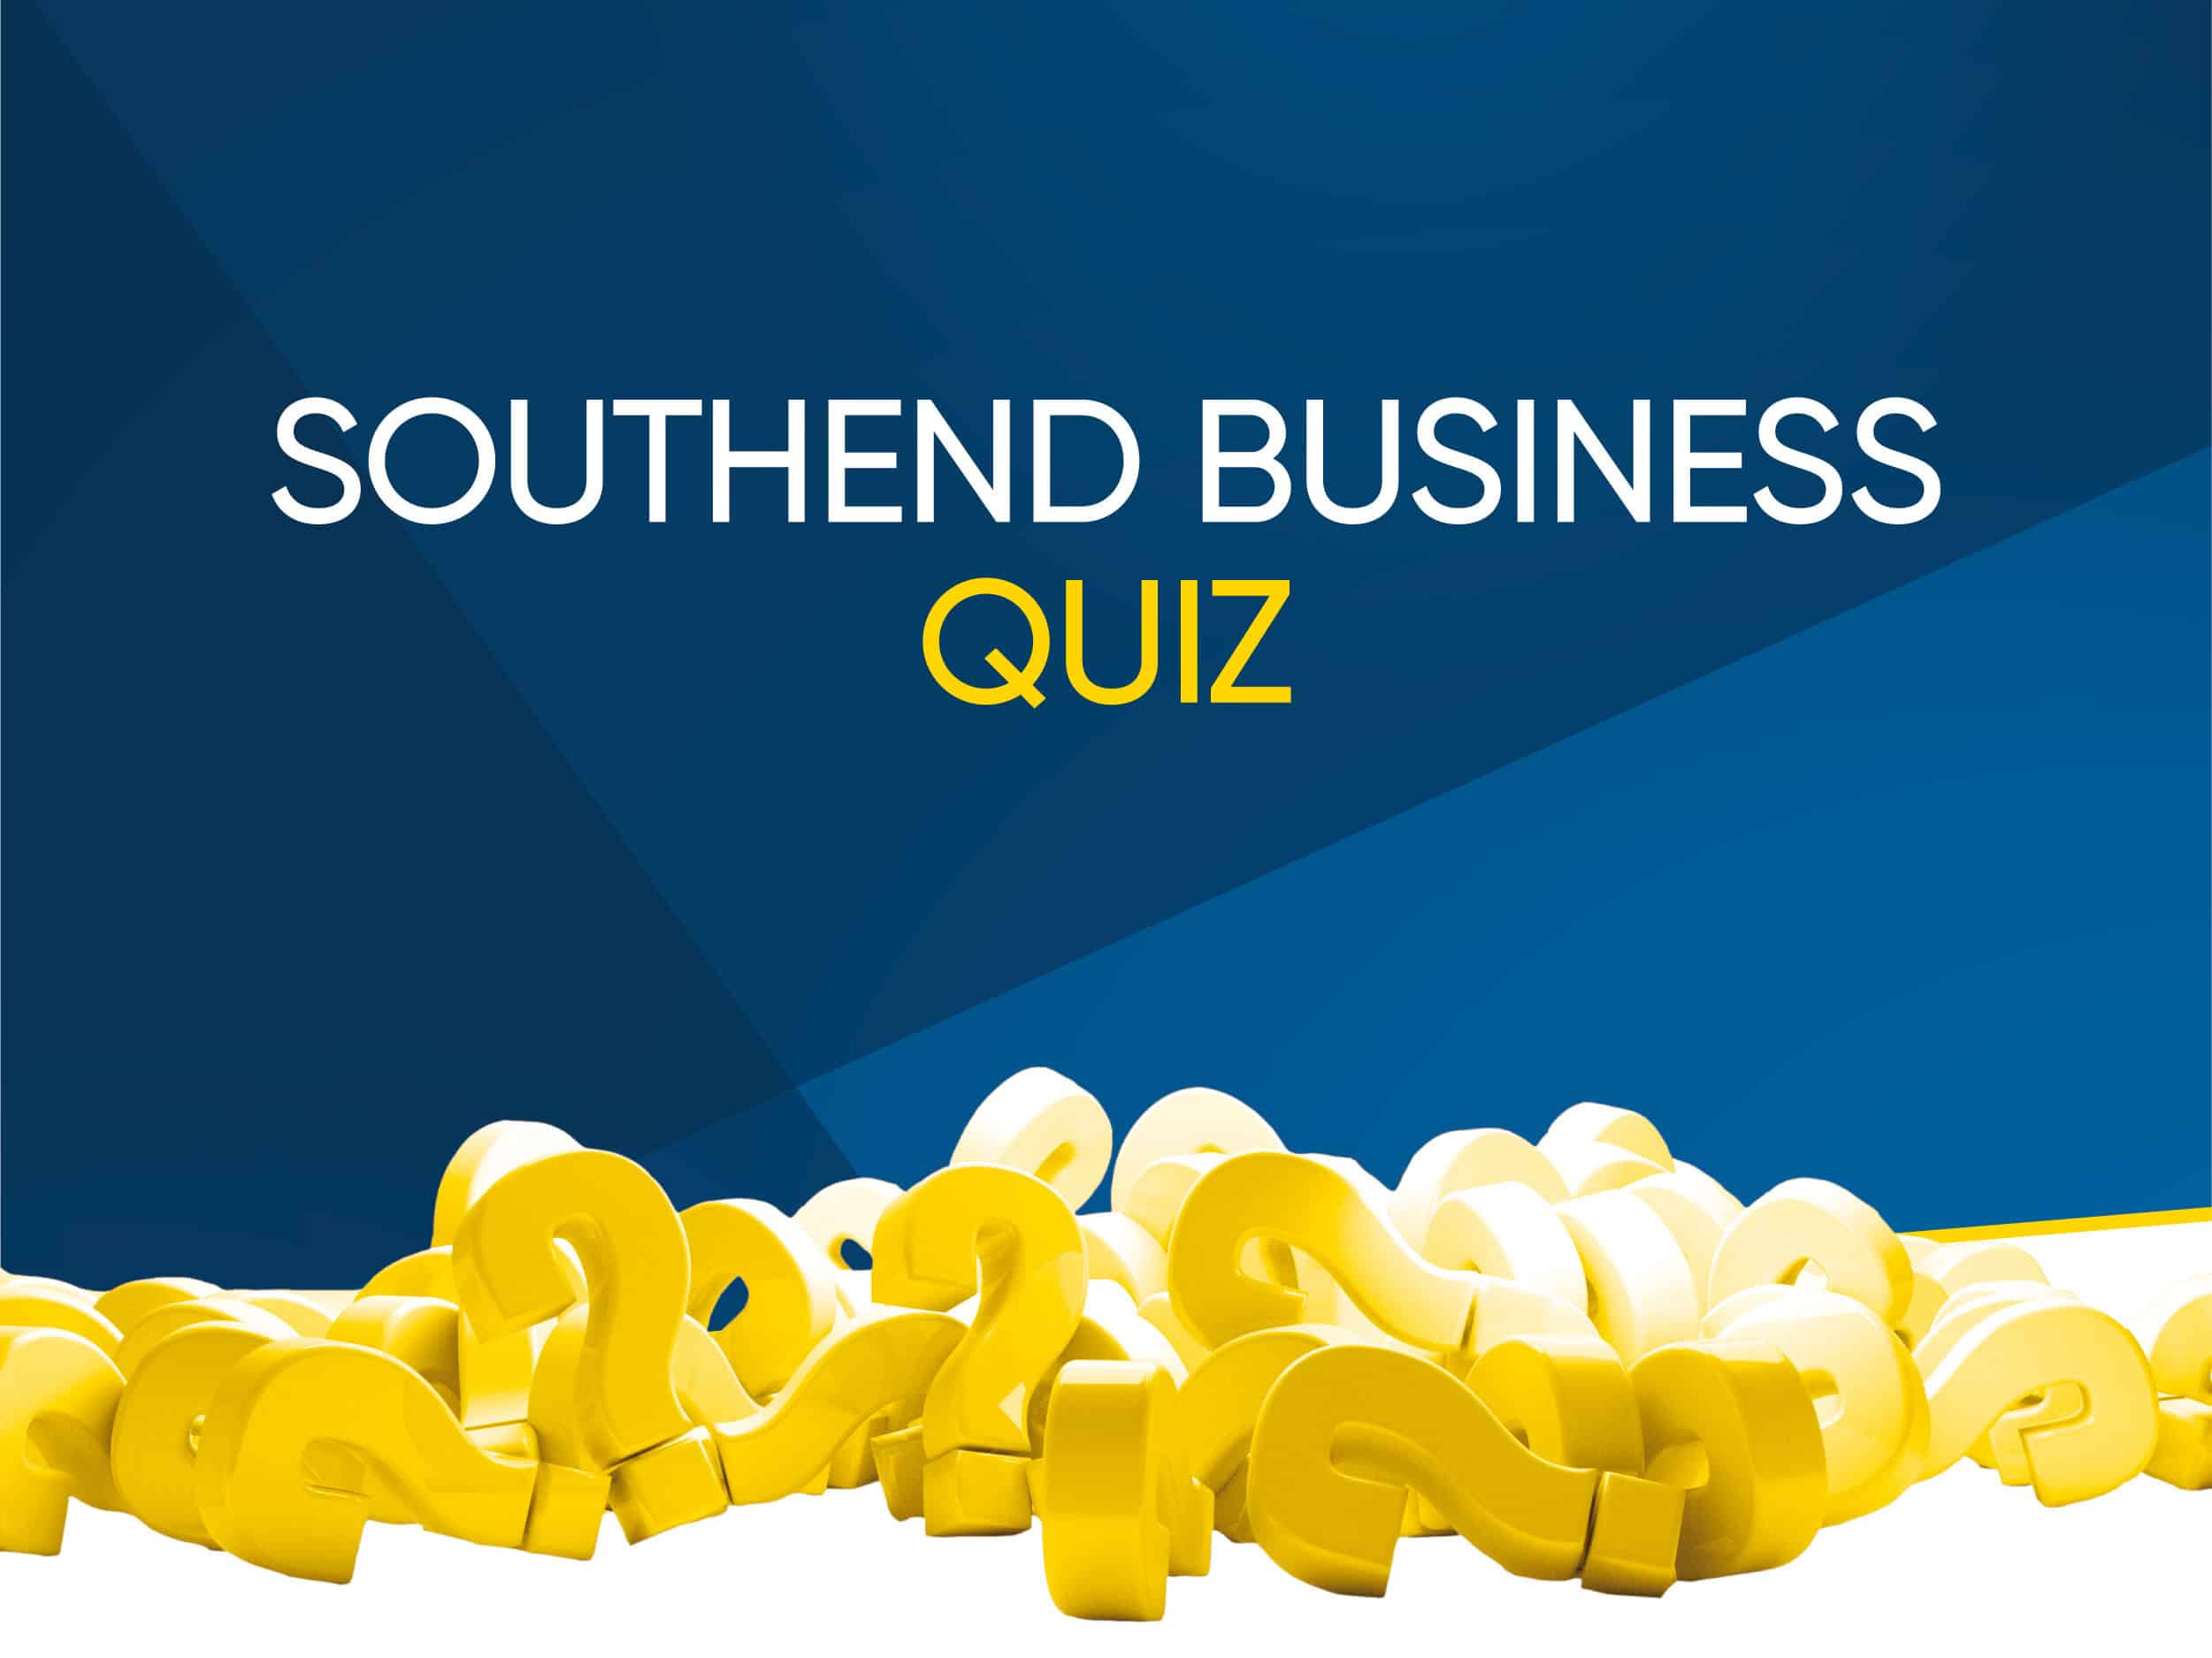 Southend business quiz